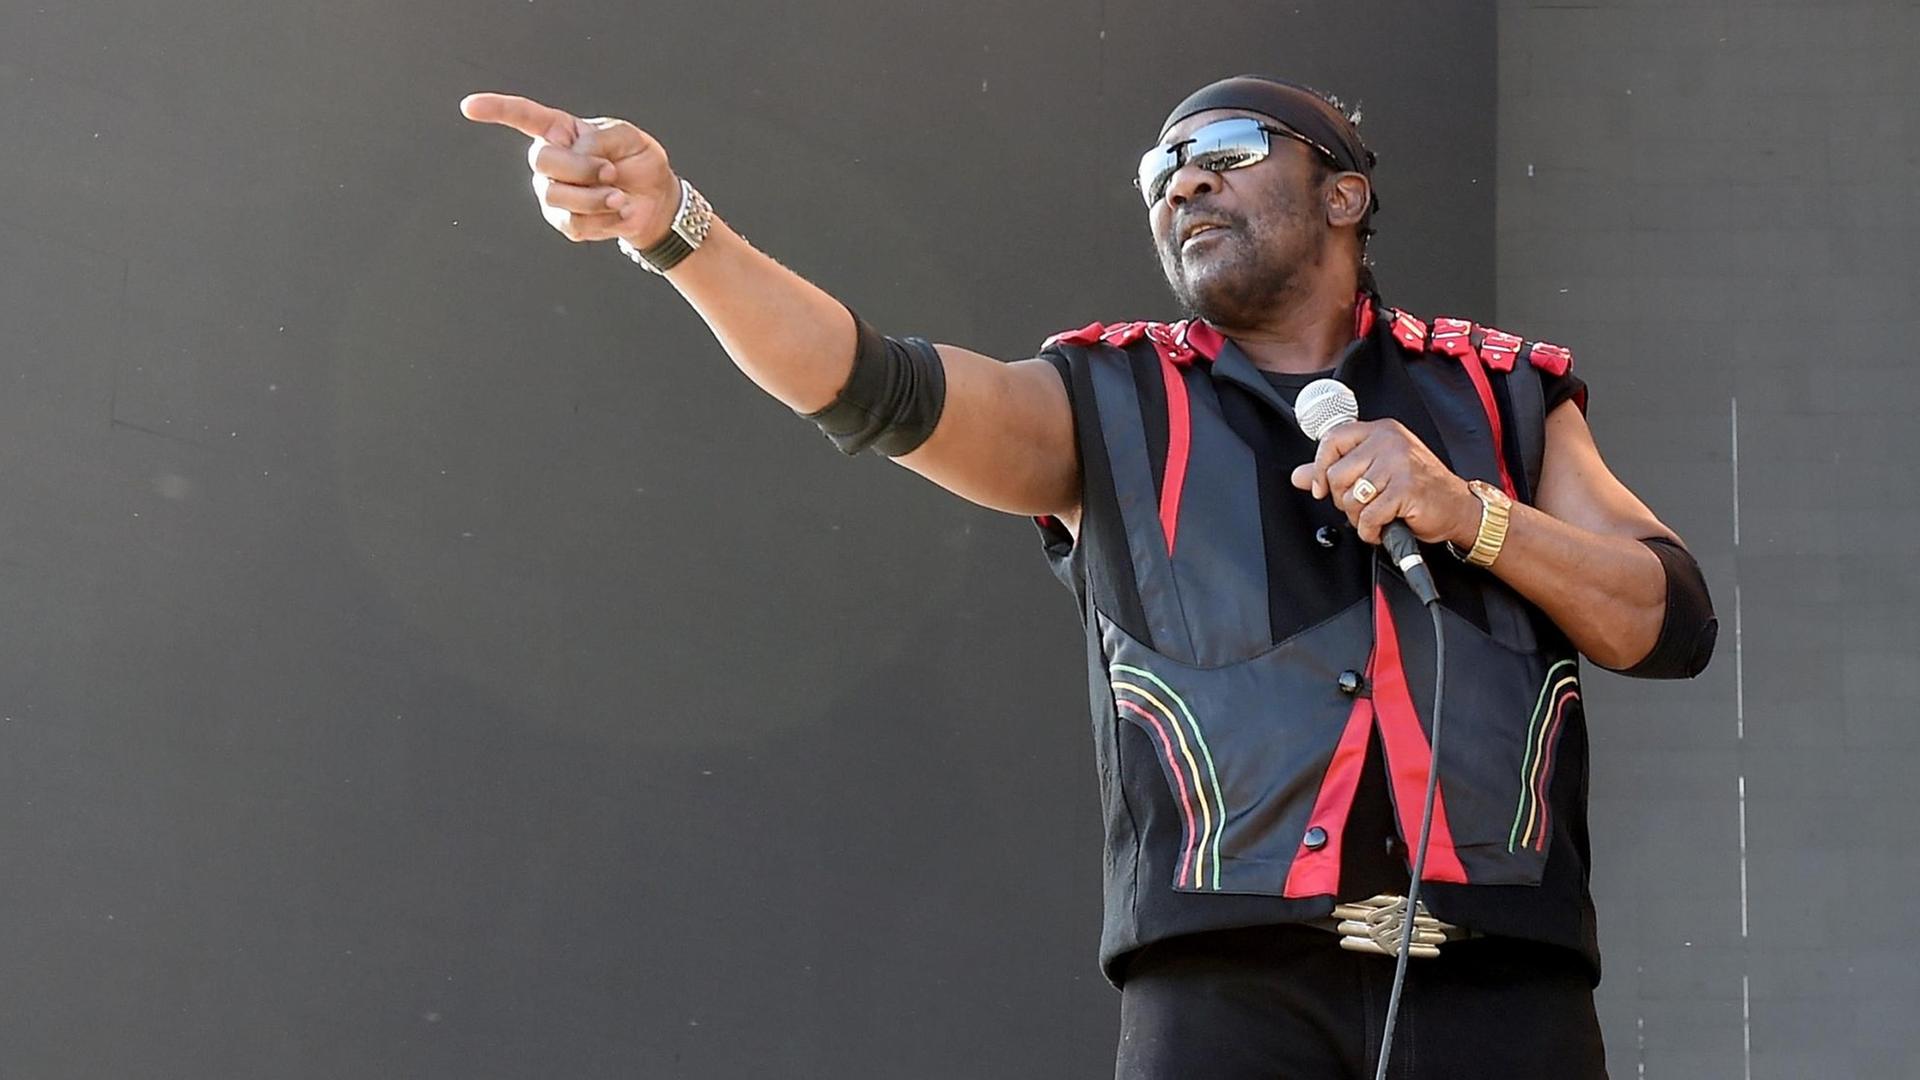 Ein Mann mit Sonnenbrille vor den Augen steht auf einer Bühne und hält in der linken Hand ein Mikrofon. Mit der Rechten streckt er den Zeigefinger am waagerecht gehobenen Arm.